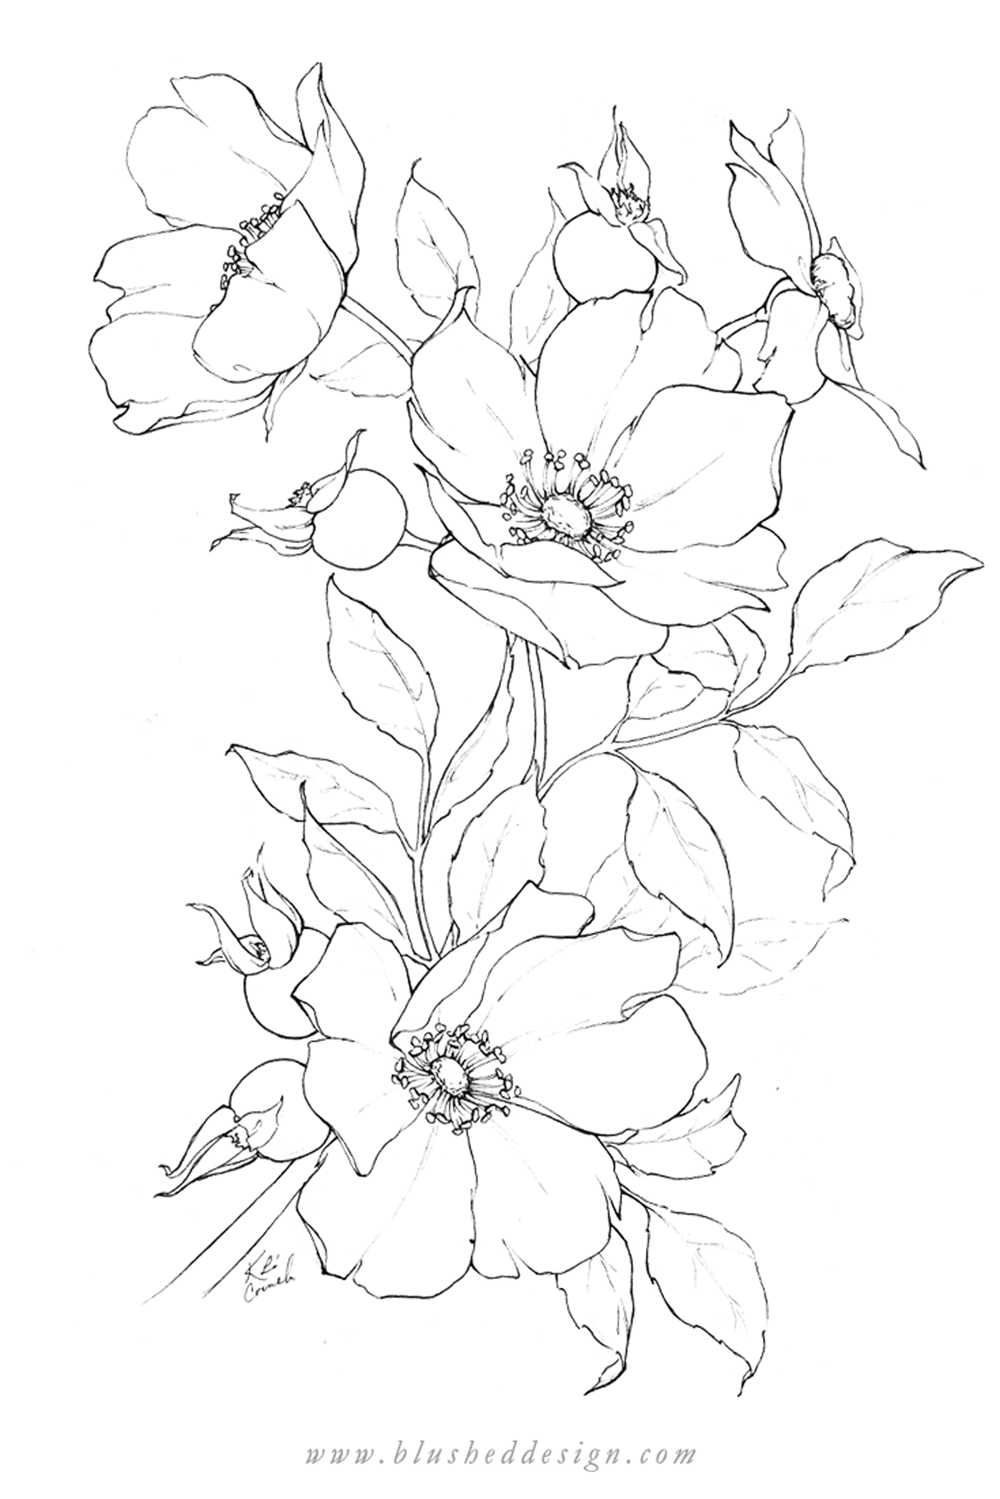 flower designs drawings